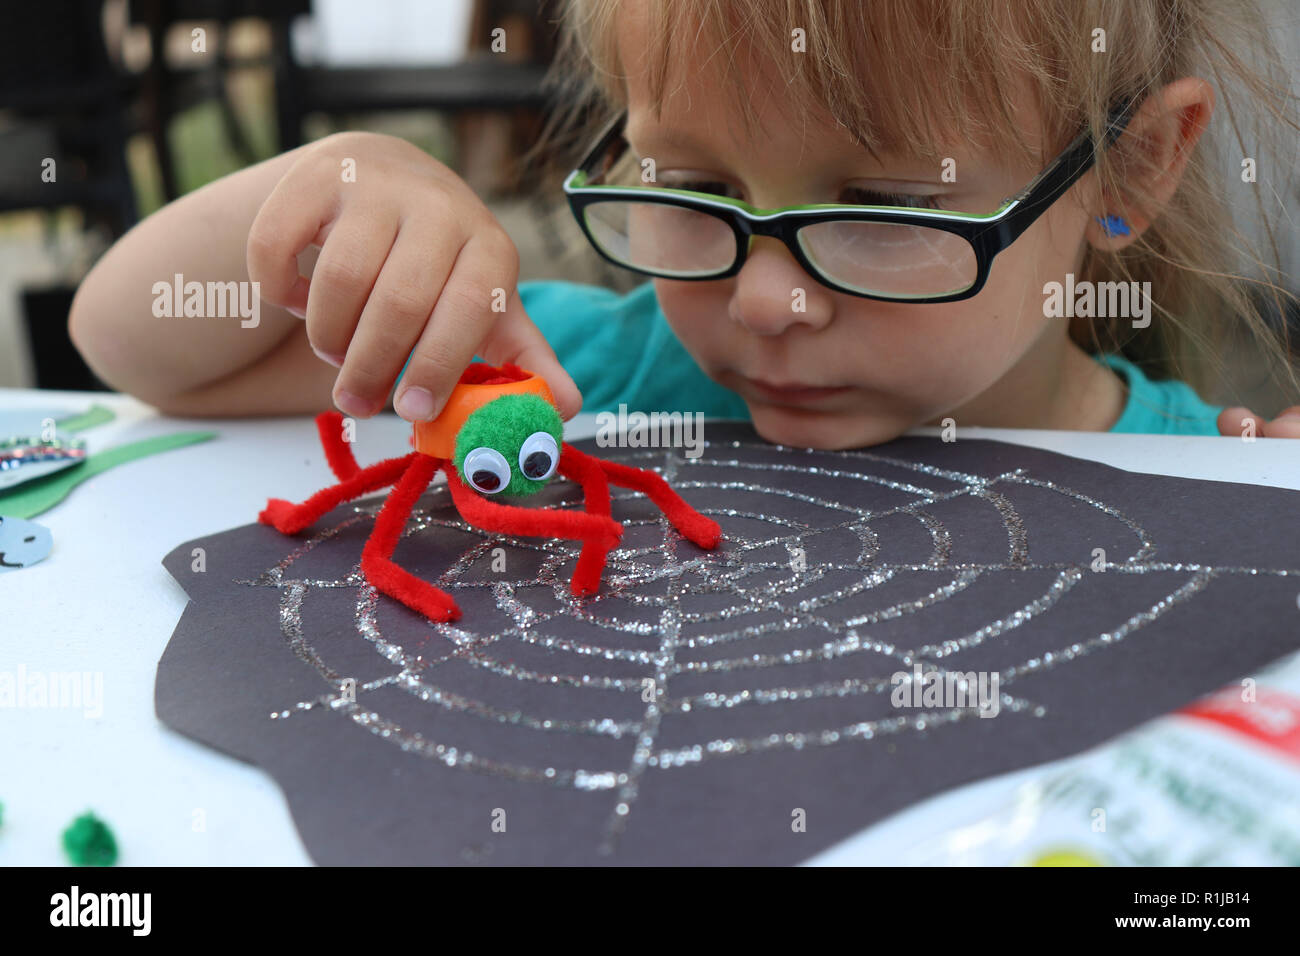 Petite fille jouant avec son spider, colorée malveillante Banque D'Images